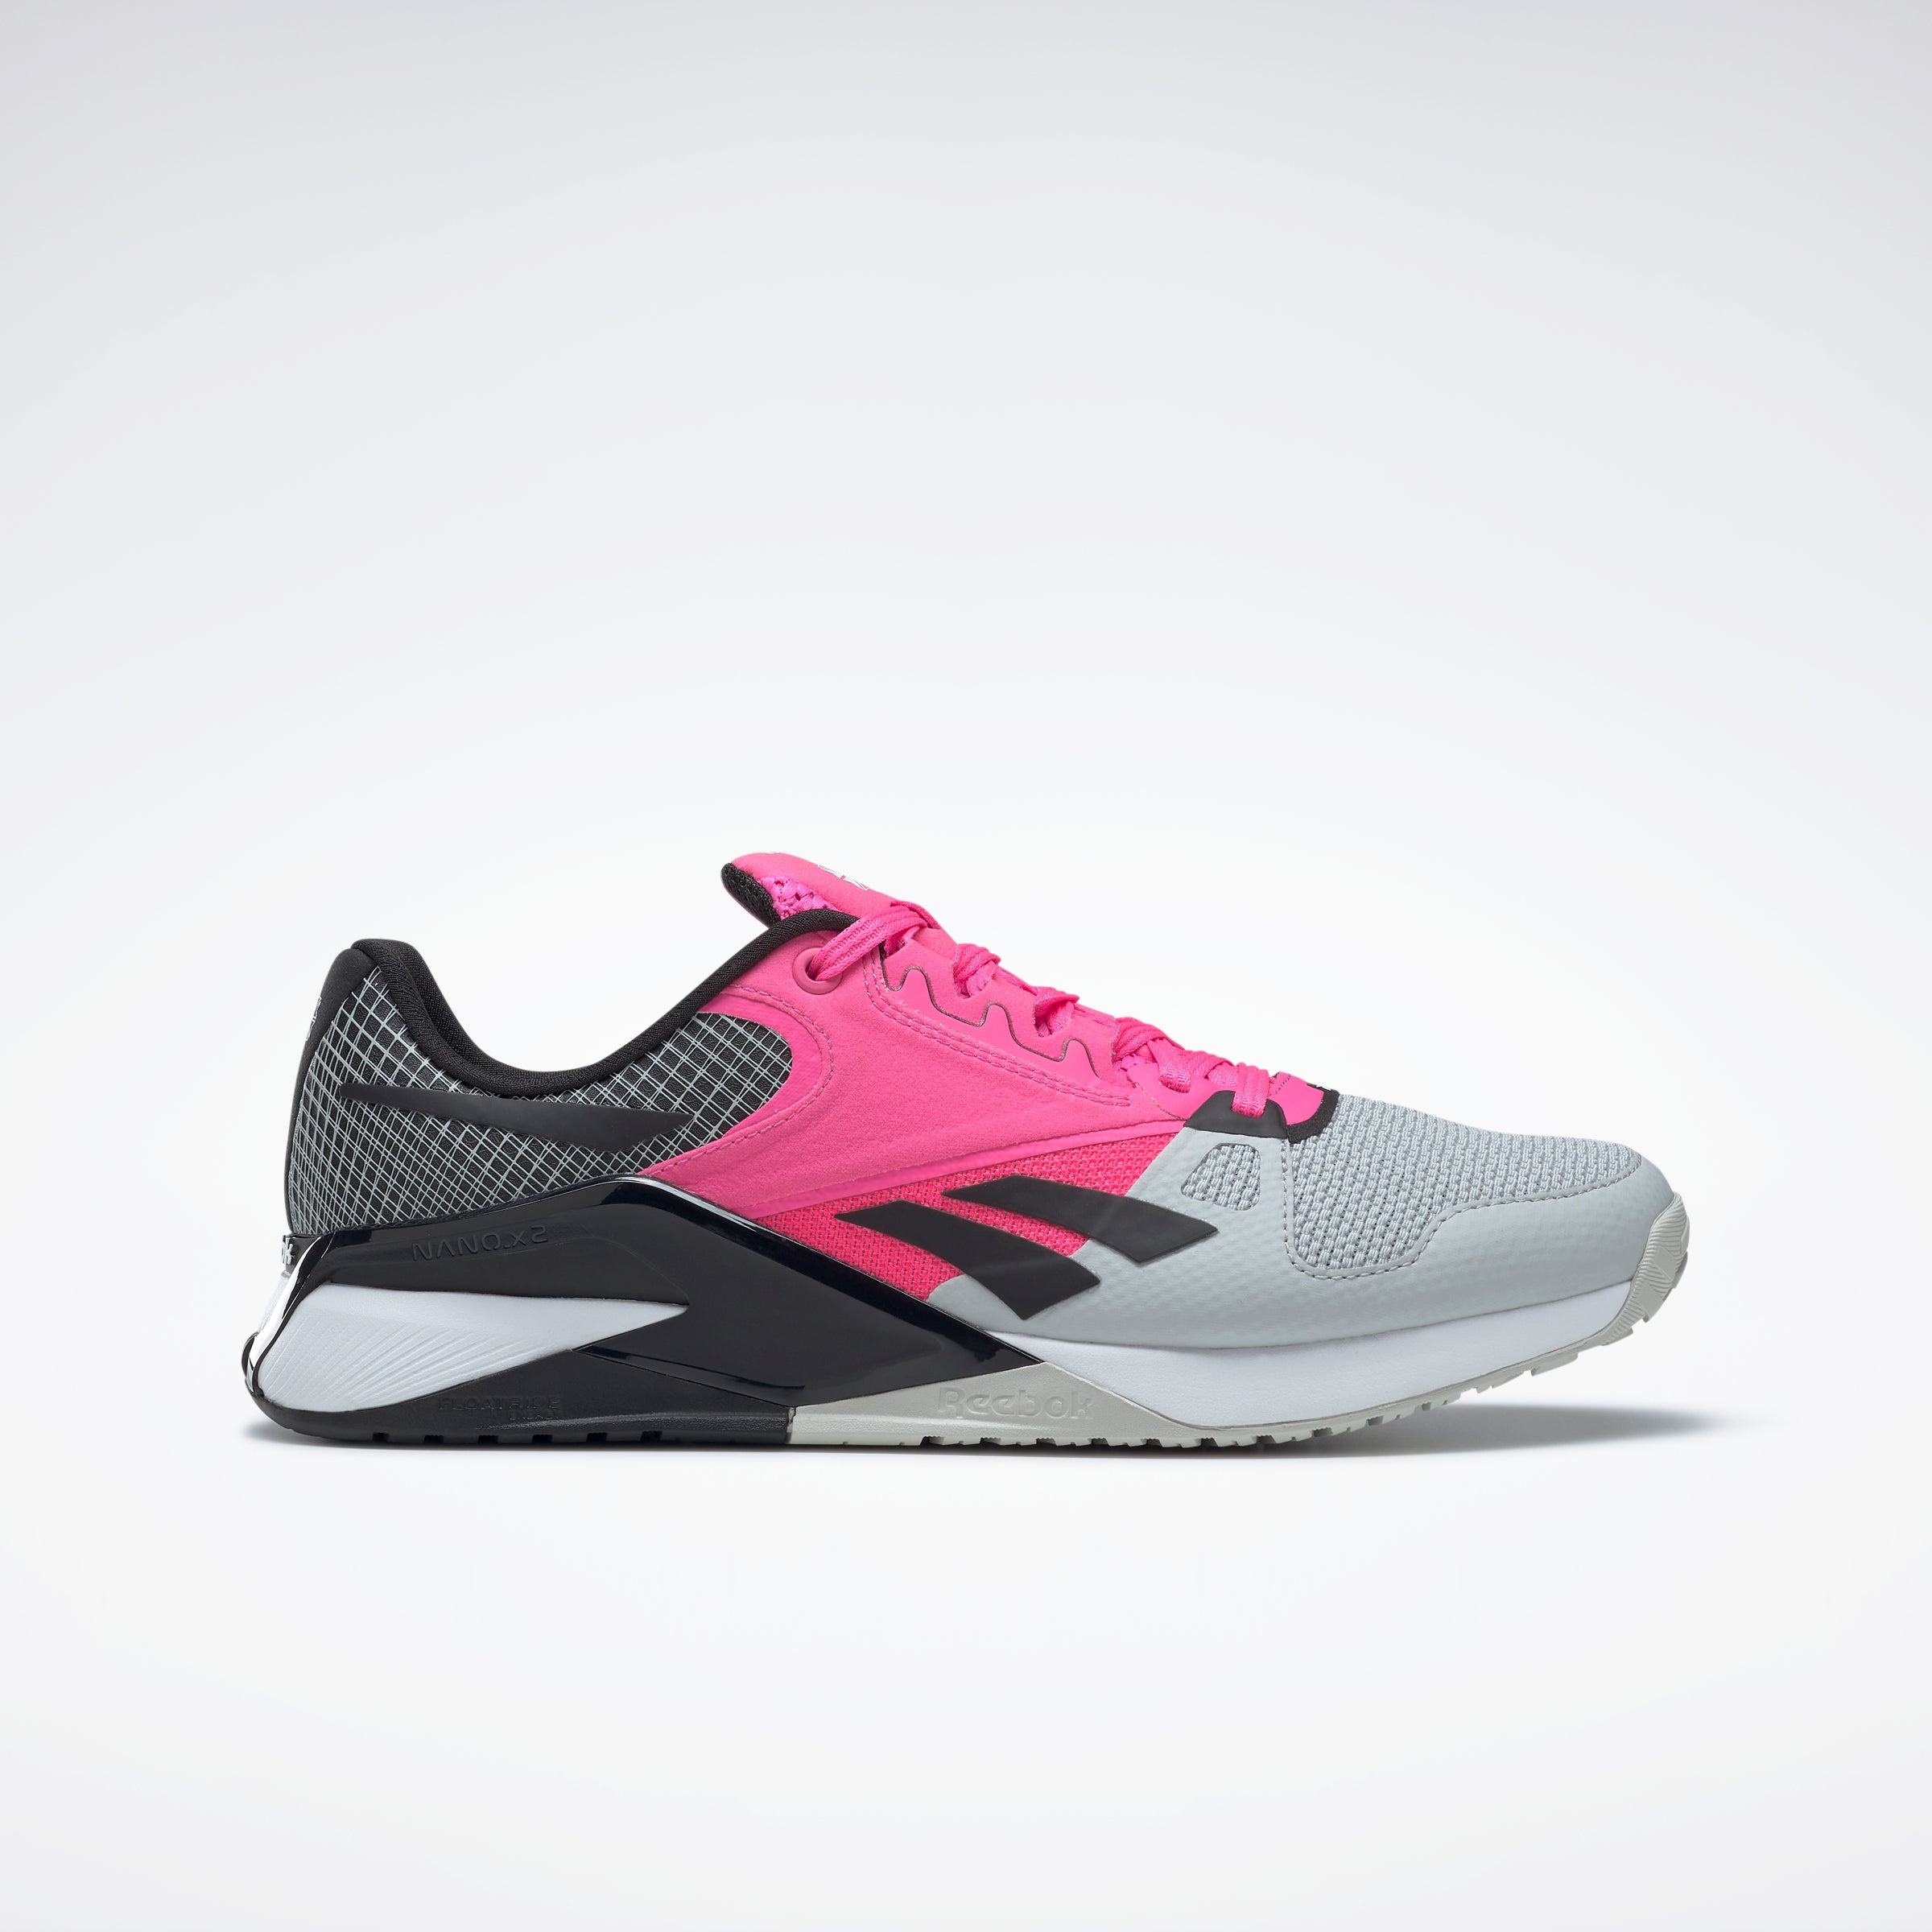 Nano 6000 Shoes Pure Grey 2/Atomic Pink/Black – Reebok Australia